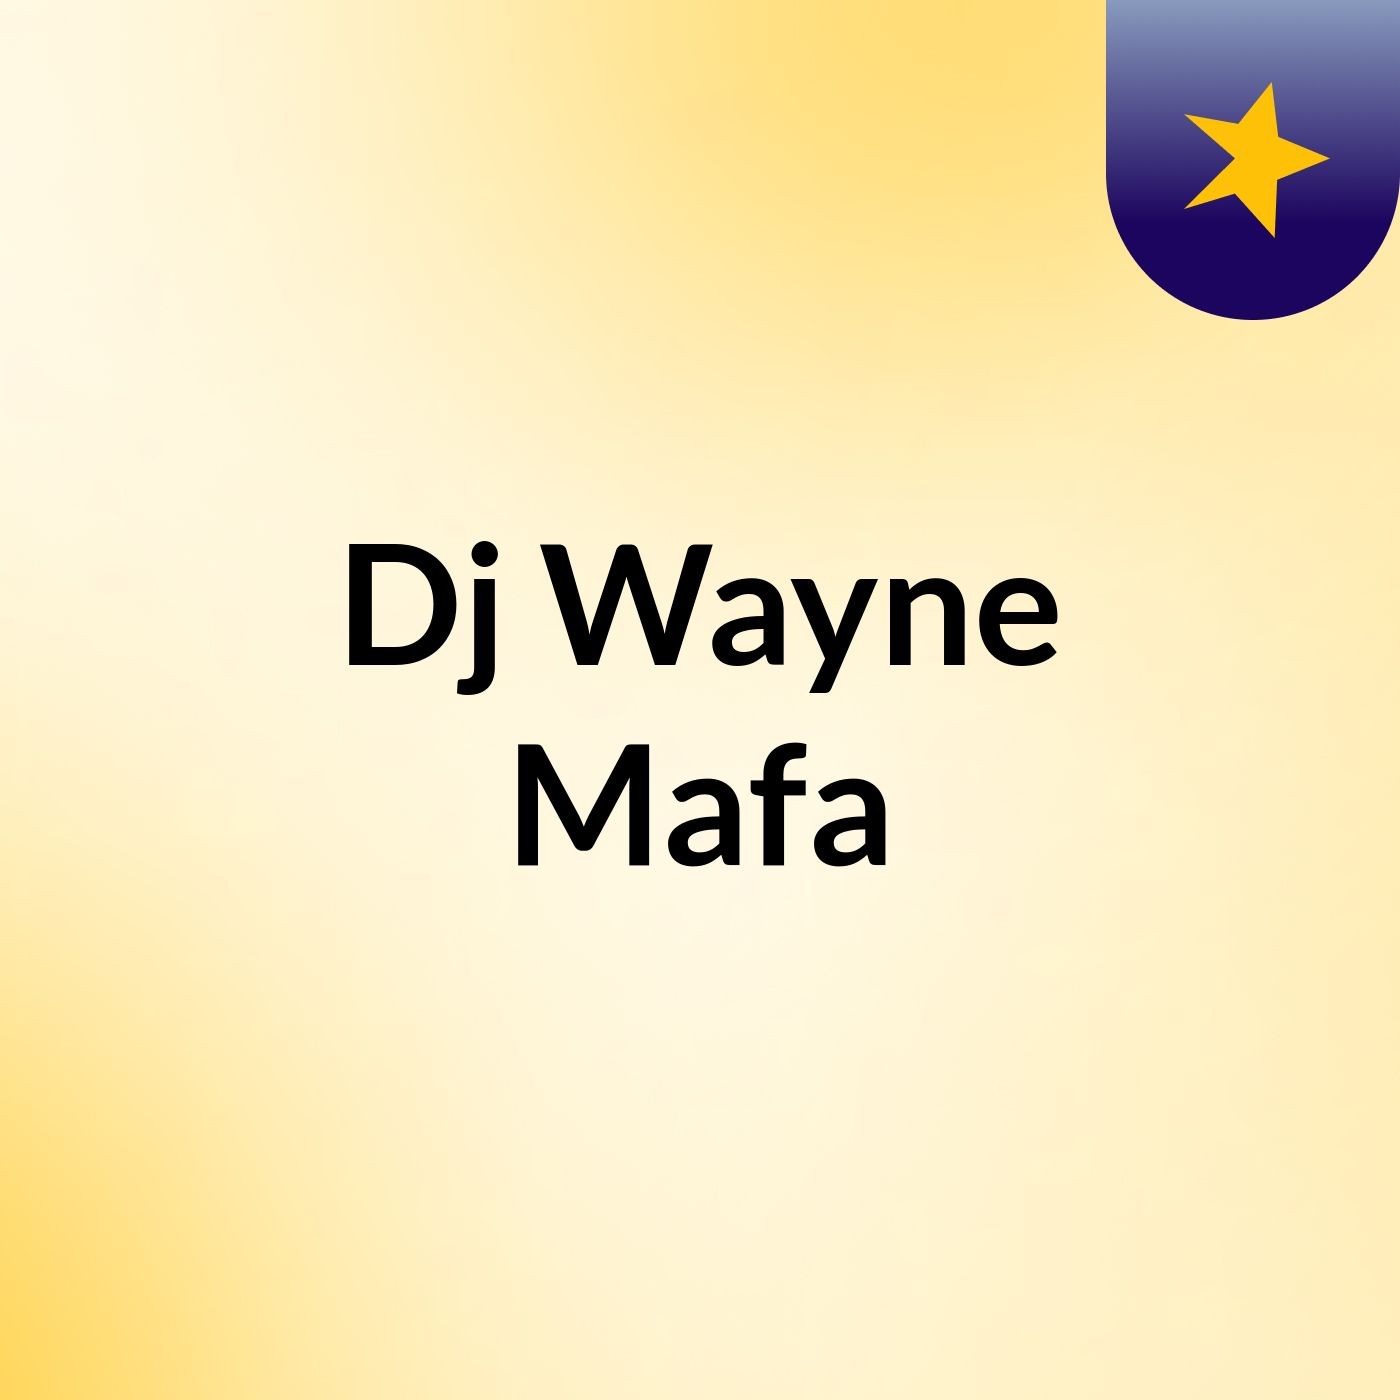 Dj Wayne Mafa